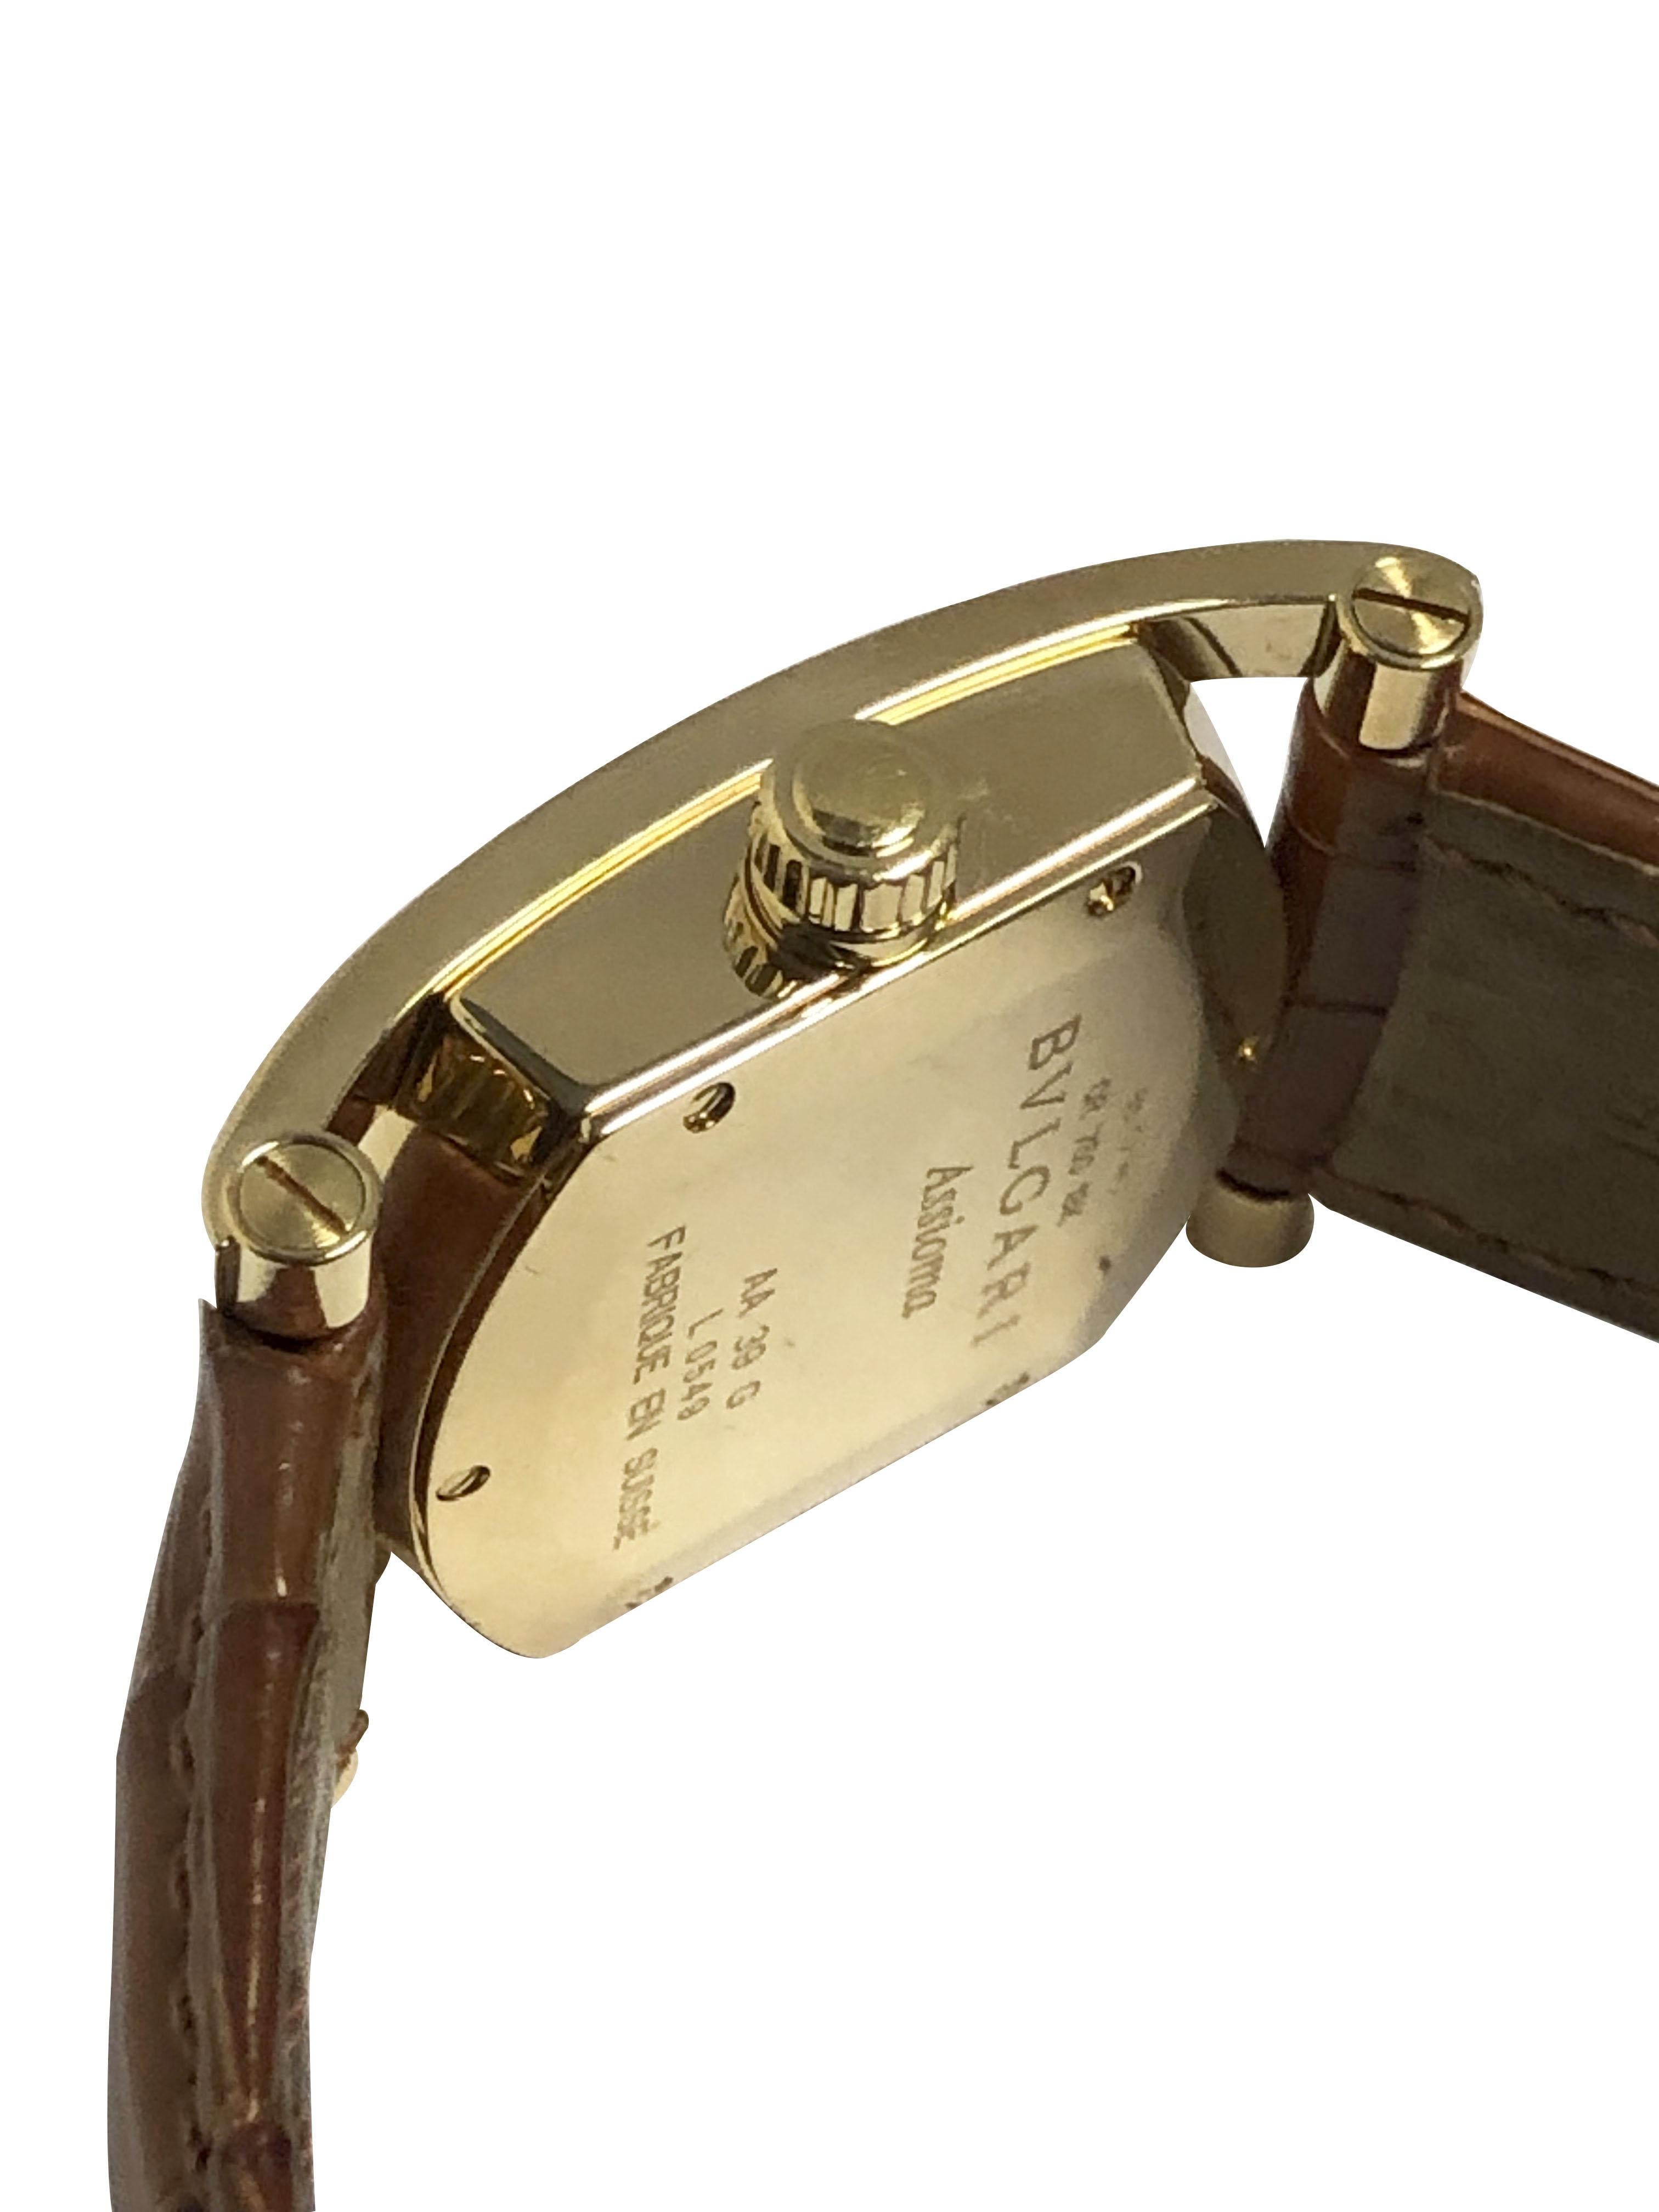 Circa 2010 Bulgari Referencia AA 39 G Reloj de pulsera de la colección Assioma, 38 X 50 M.M. ( incluida la longitud total con asas ) caja de 3 piezas de oro amarillo de 18 quilates, movimiento de cuarzo, esfera de lino blanco con marcadores dorados